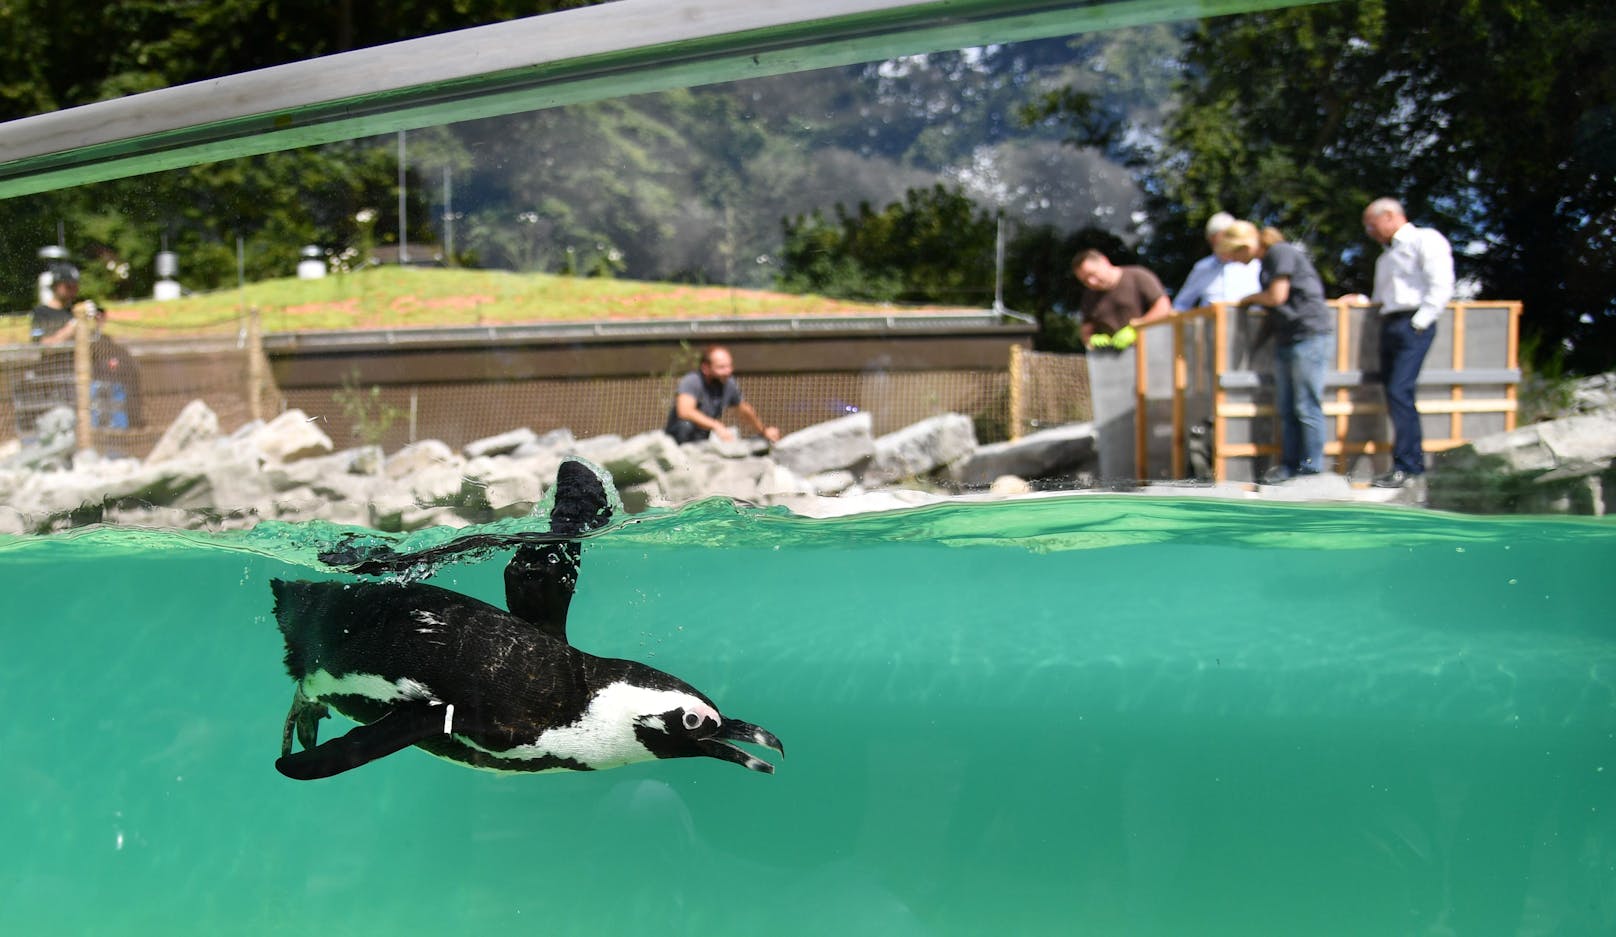 Die Polizei verständigte den Zoo und der Pinguin konnte ein bisschen abgemagert aber unverletzt zu seiner Kolonie gebracht werden. Der Zoo erstattete Anzeige.